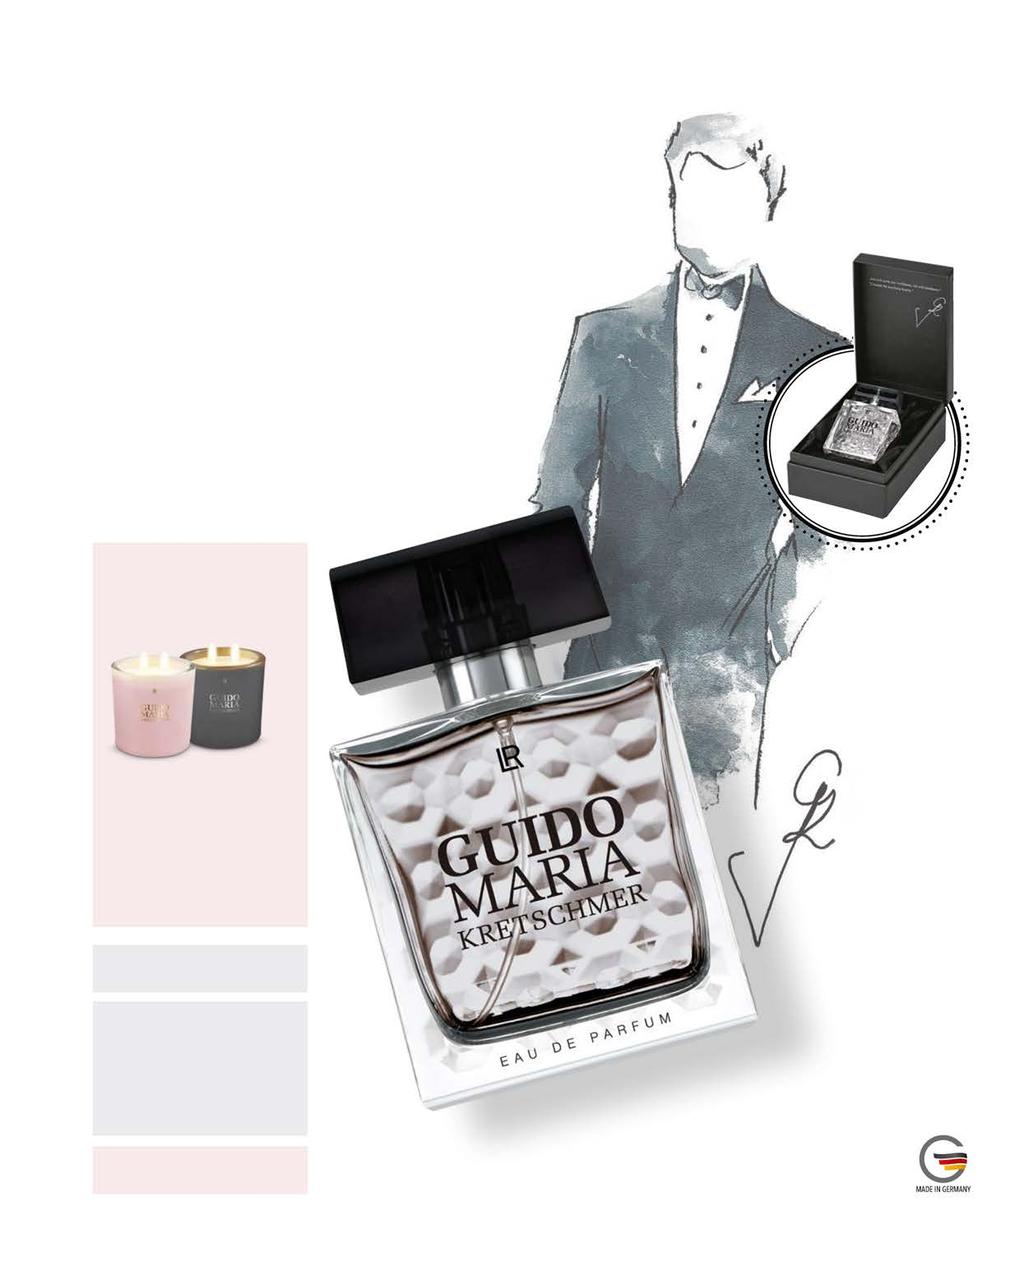 Haute parfum за мъже by Guido Maria Kretschmer Както дамският аромат, така и мъжкият аромат носи почерка на дизайнера: елегантен, висококачествен, непреходен и автентичен.